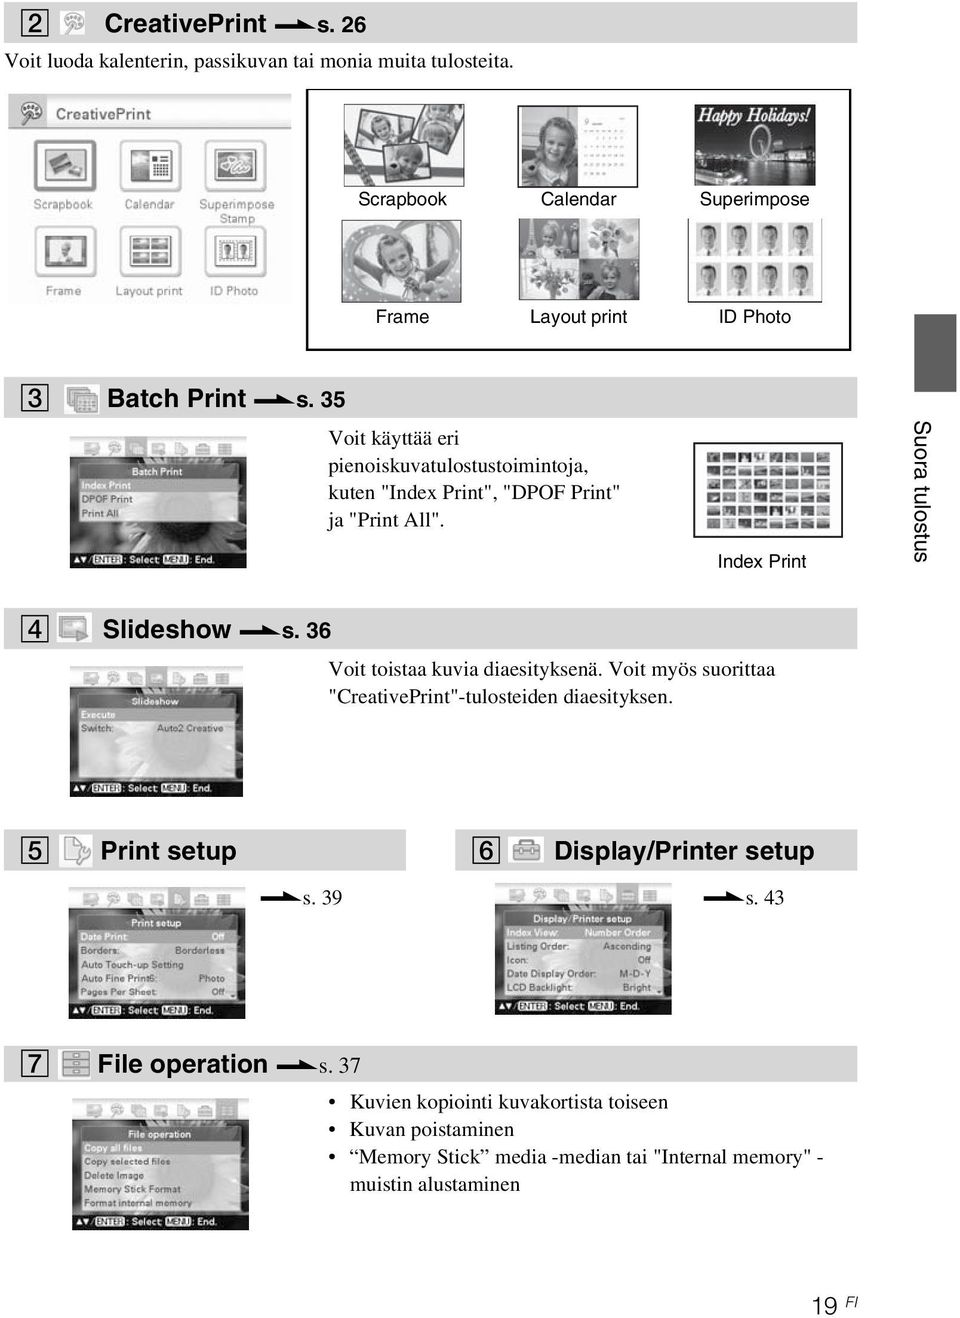 Index Print Suora tulostus 4 Slideshow.s. 36 Voit toistaa kuvia diaesityksenä. Voit myös suorittaa "CreativePrint"-tulosteiden diaesityksen.